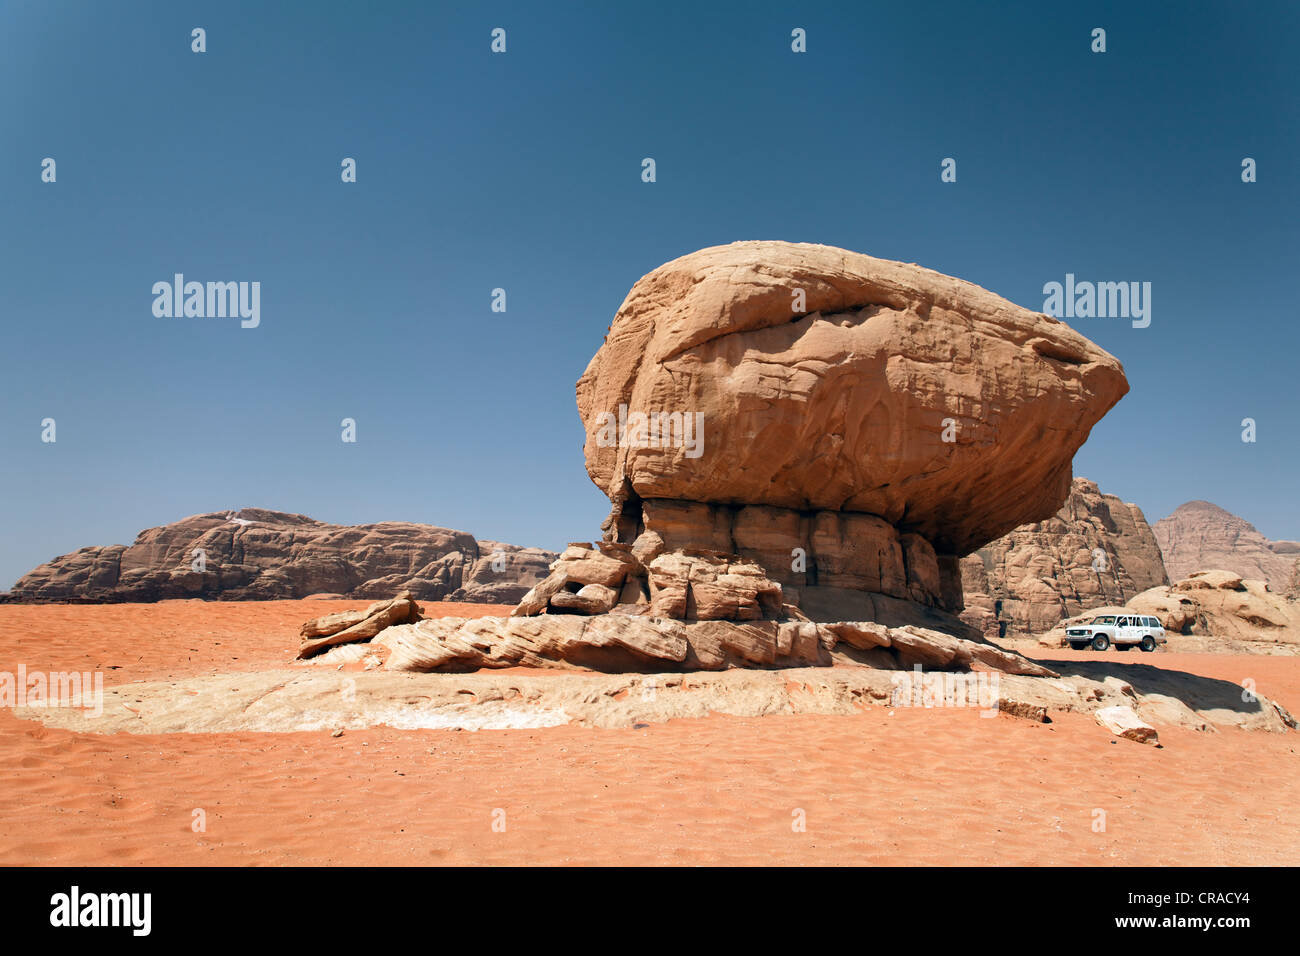 Off-Road-Fahrzeug neben eine pilzförmige Felsformation, roter Sand, Wüste, Ebenen, Wadi Rum, Haschemitischen Königreich Jordanien Stockfoto